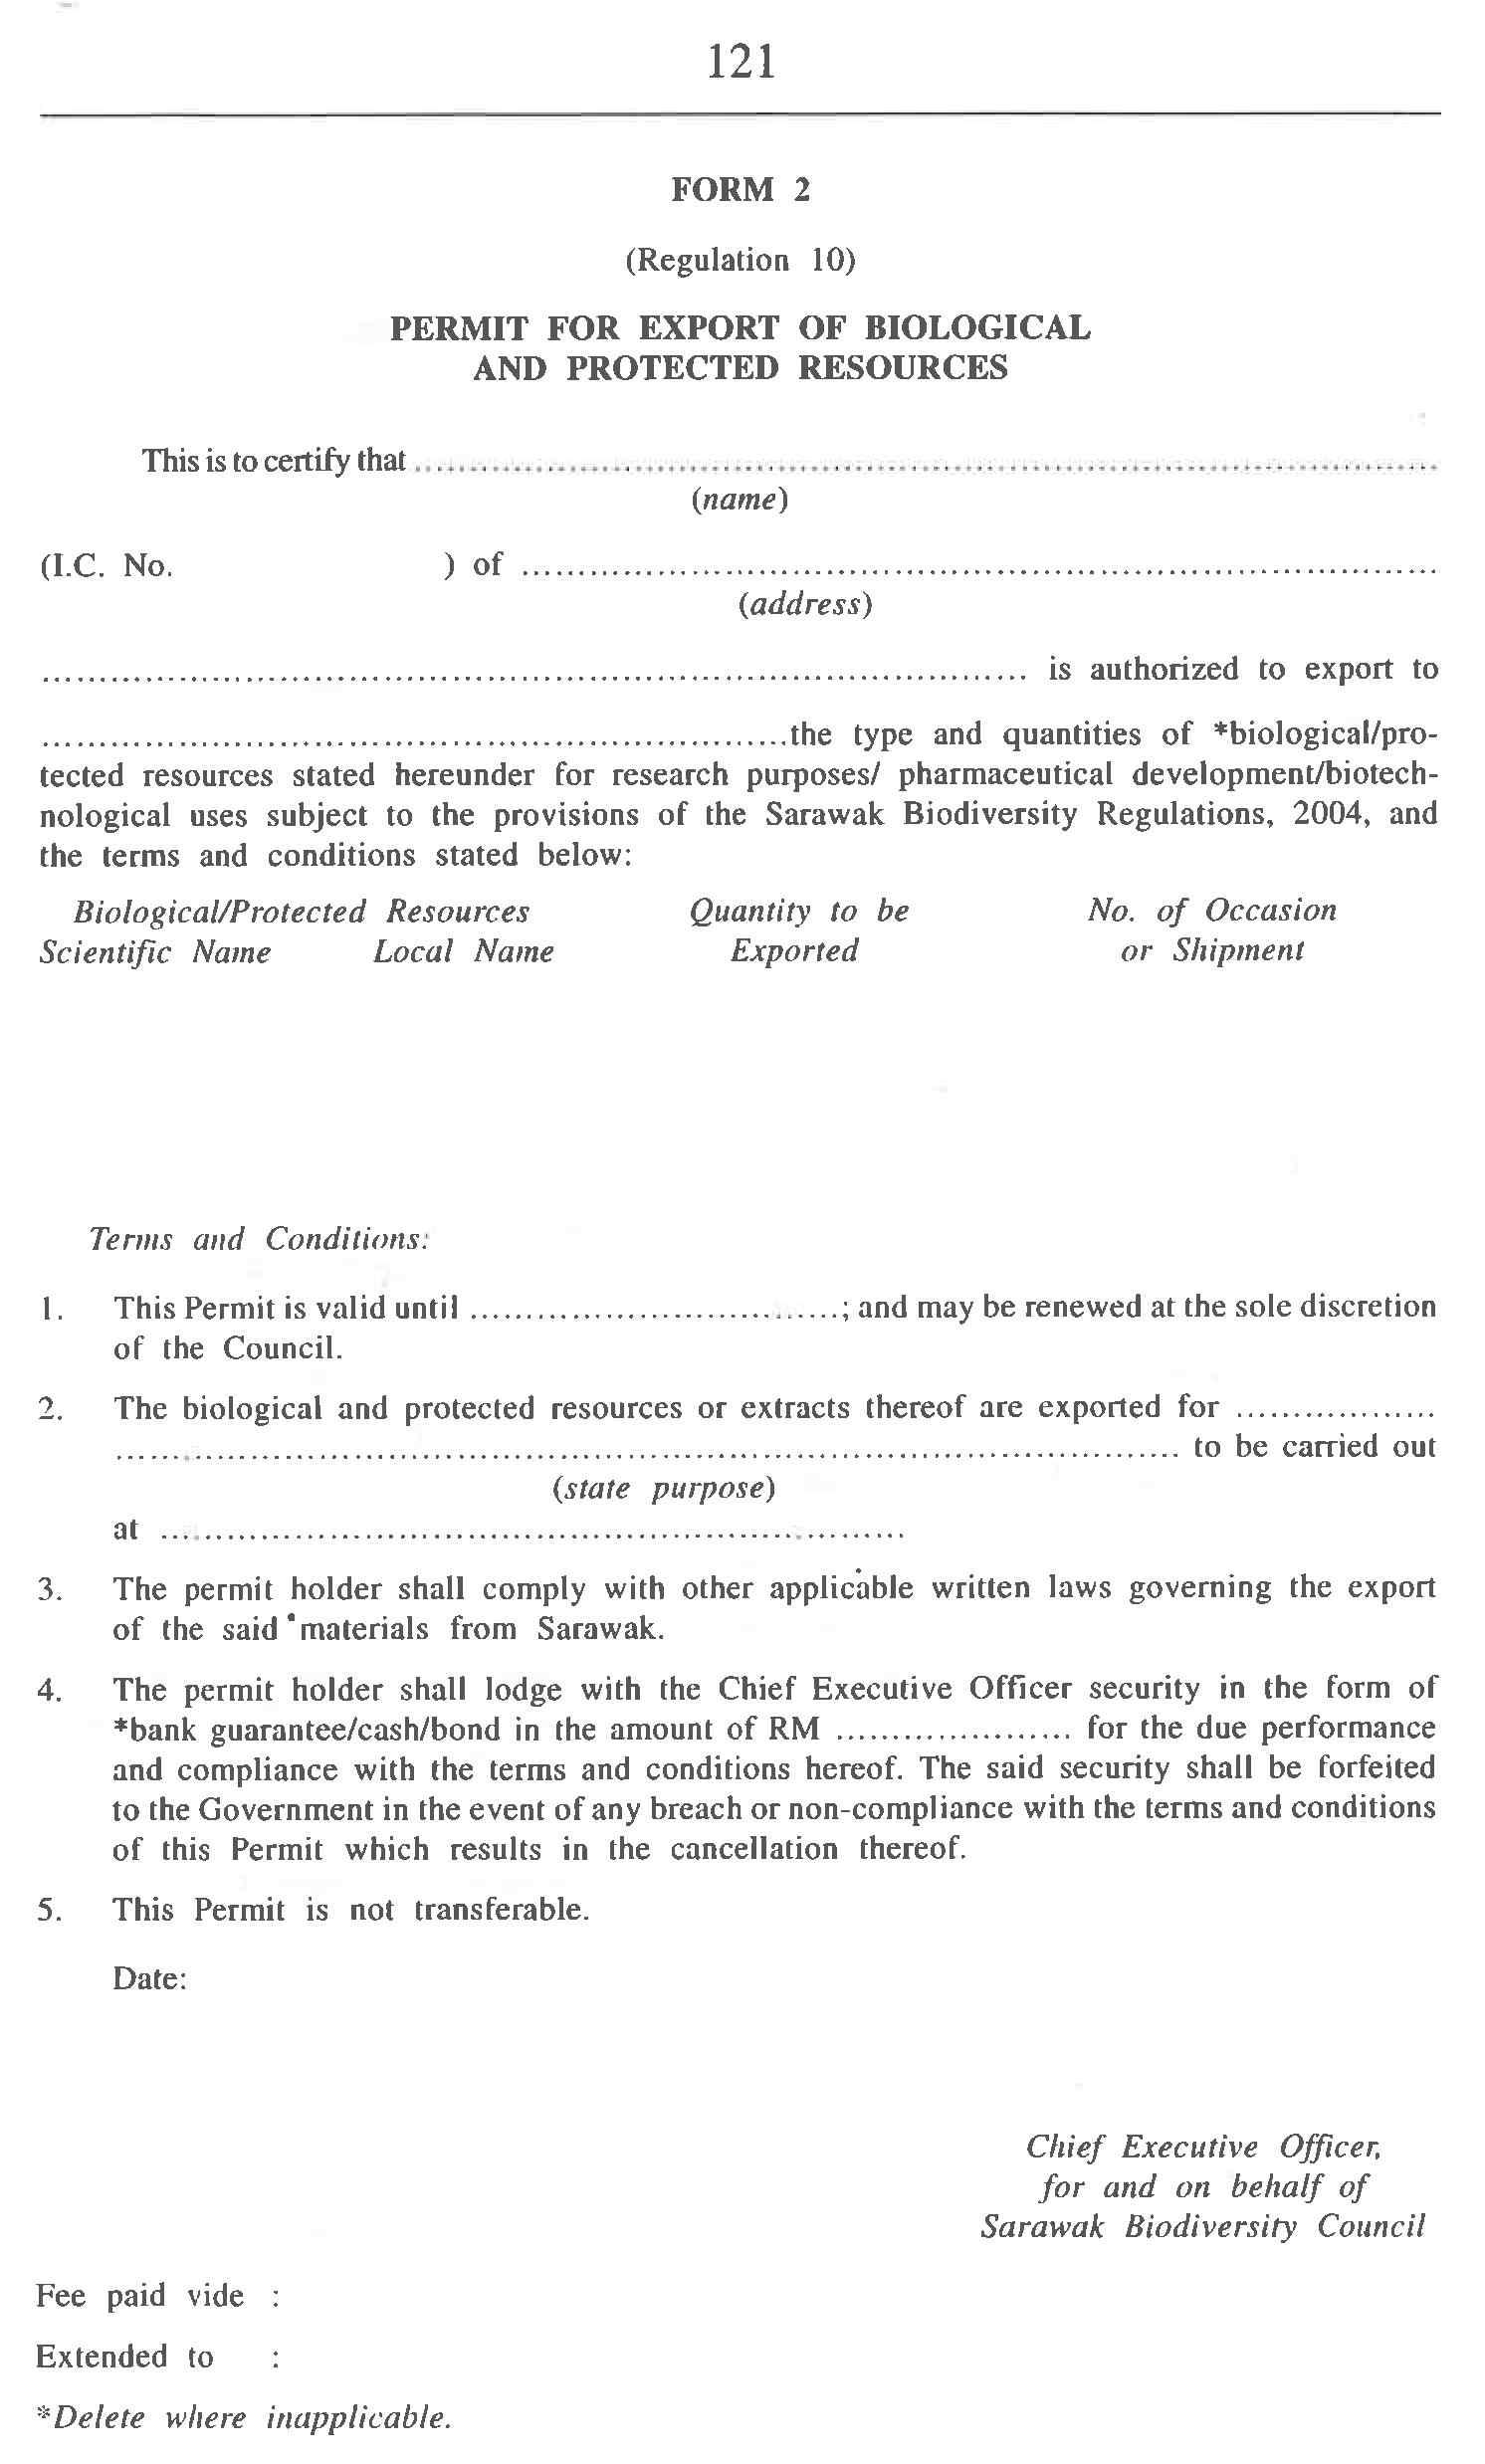 말레이시아 사라왁주 생물자원 수집 등의 관한 허가증 (Form 2)